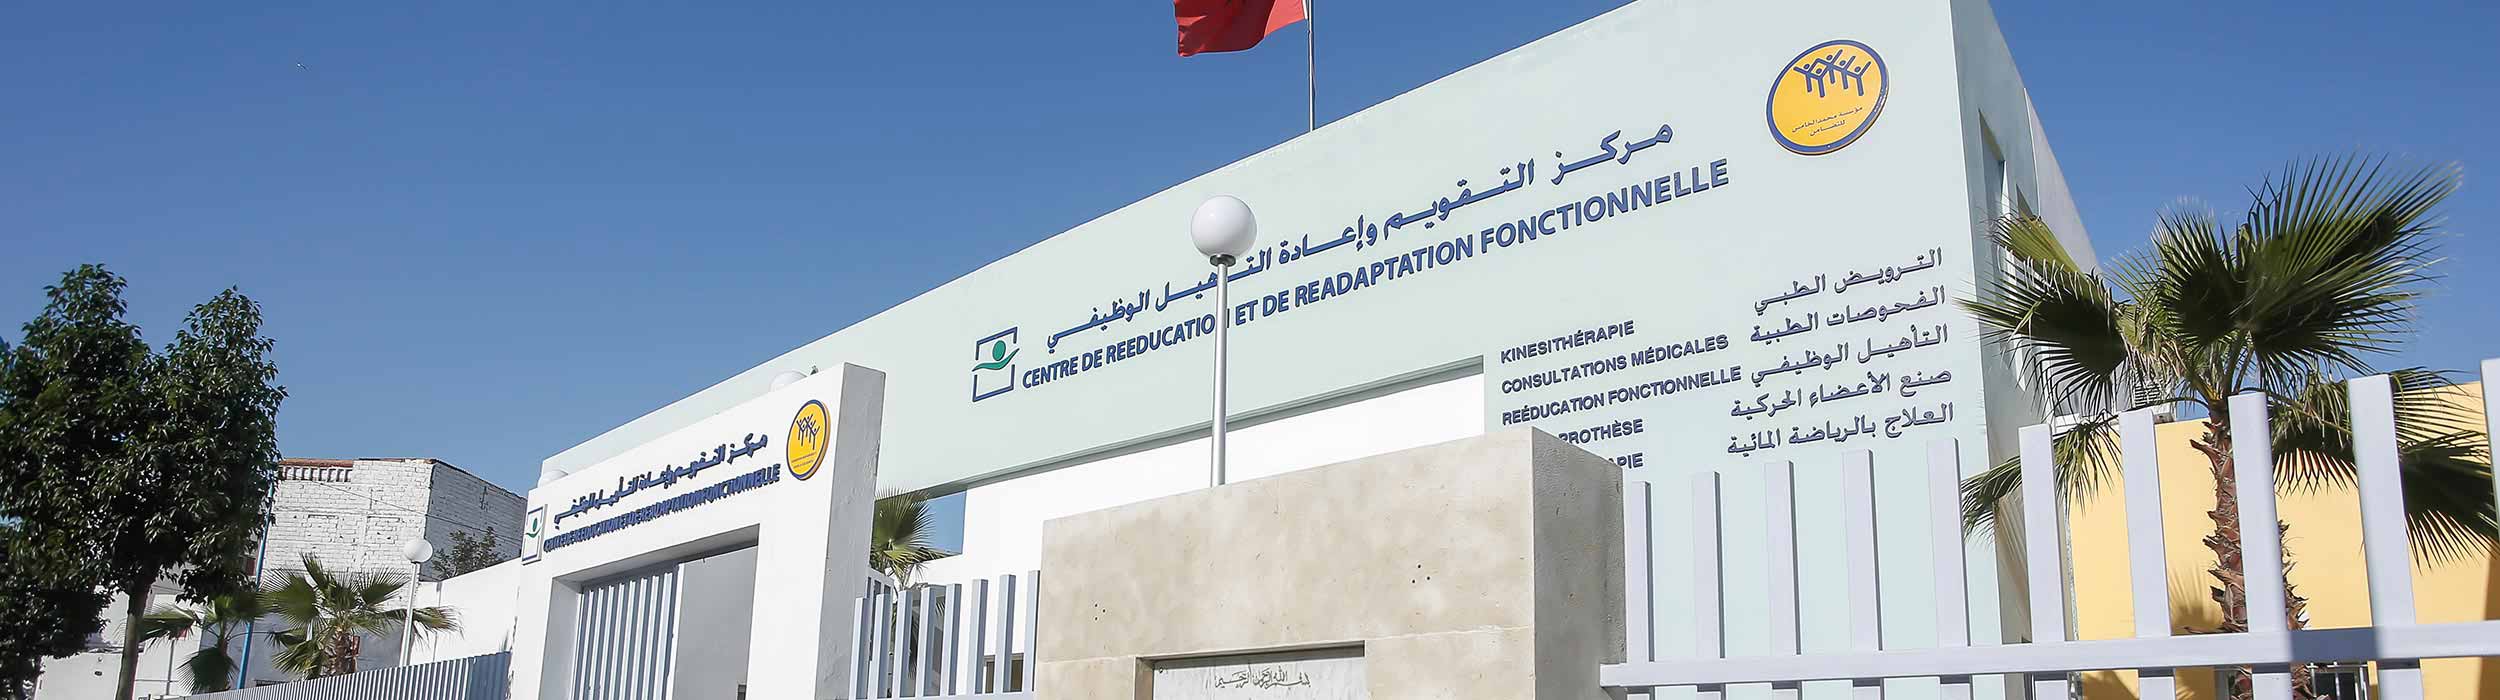 Centro De Reeducación Y De Readaptación Funcional  Ain Chock - Casablanca